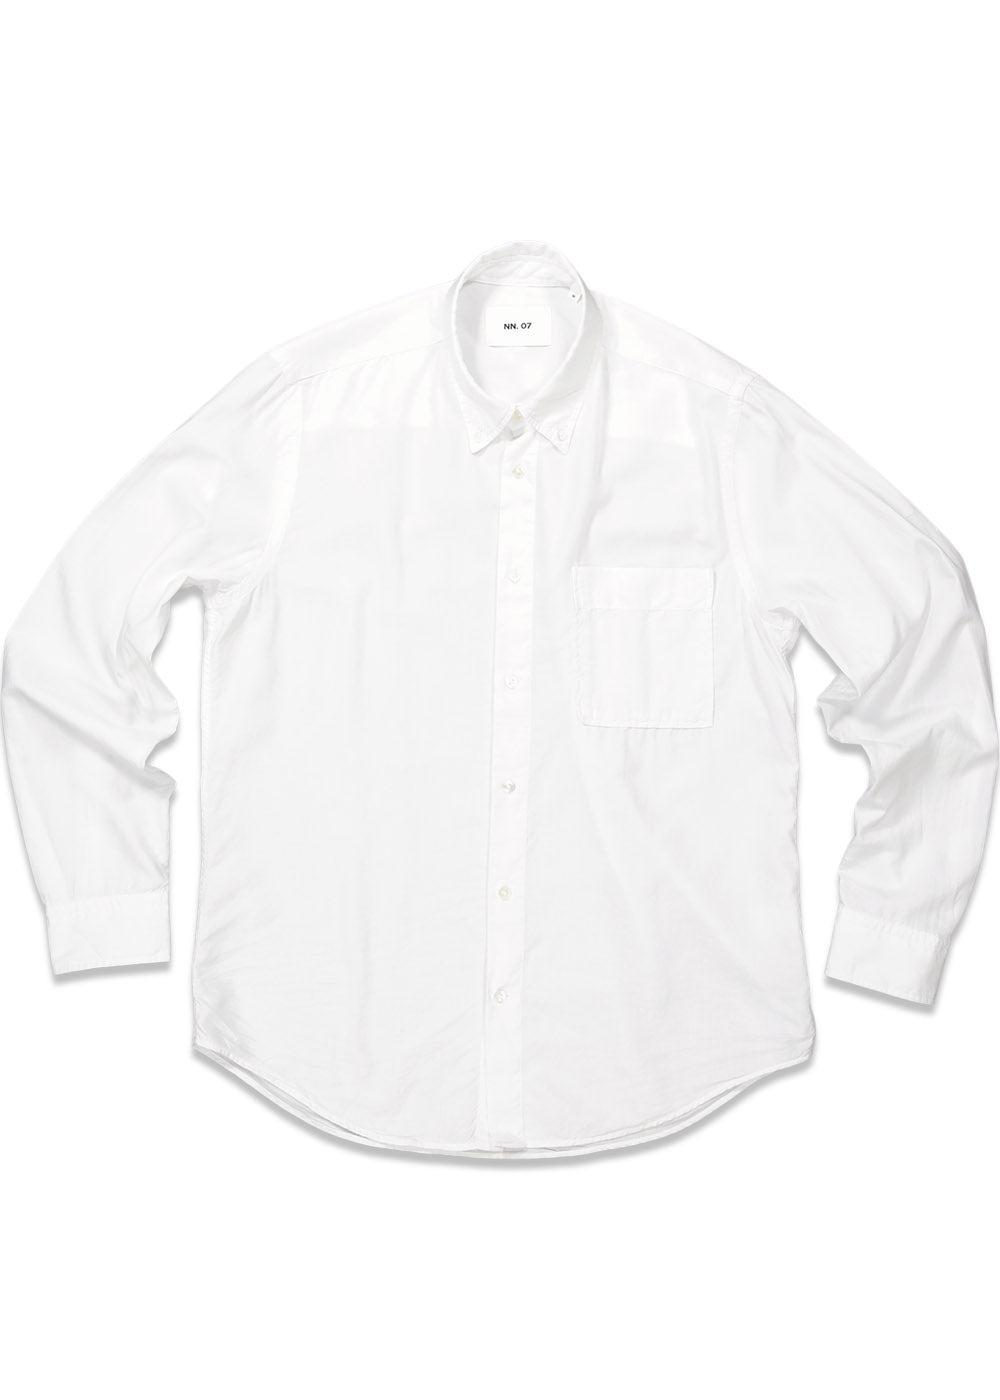 Nn. 07s Arne BD 5655 - White. Køb shirts her.